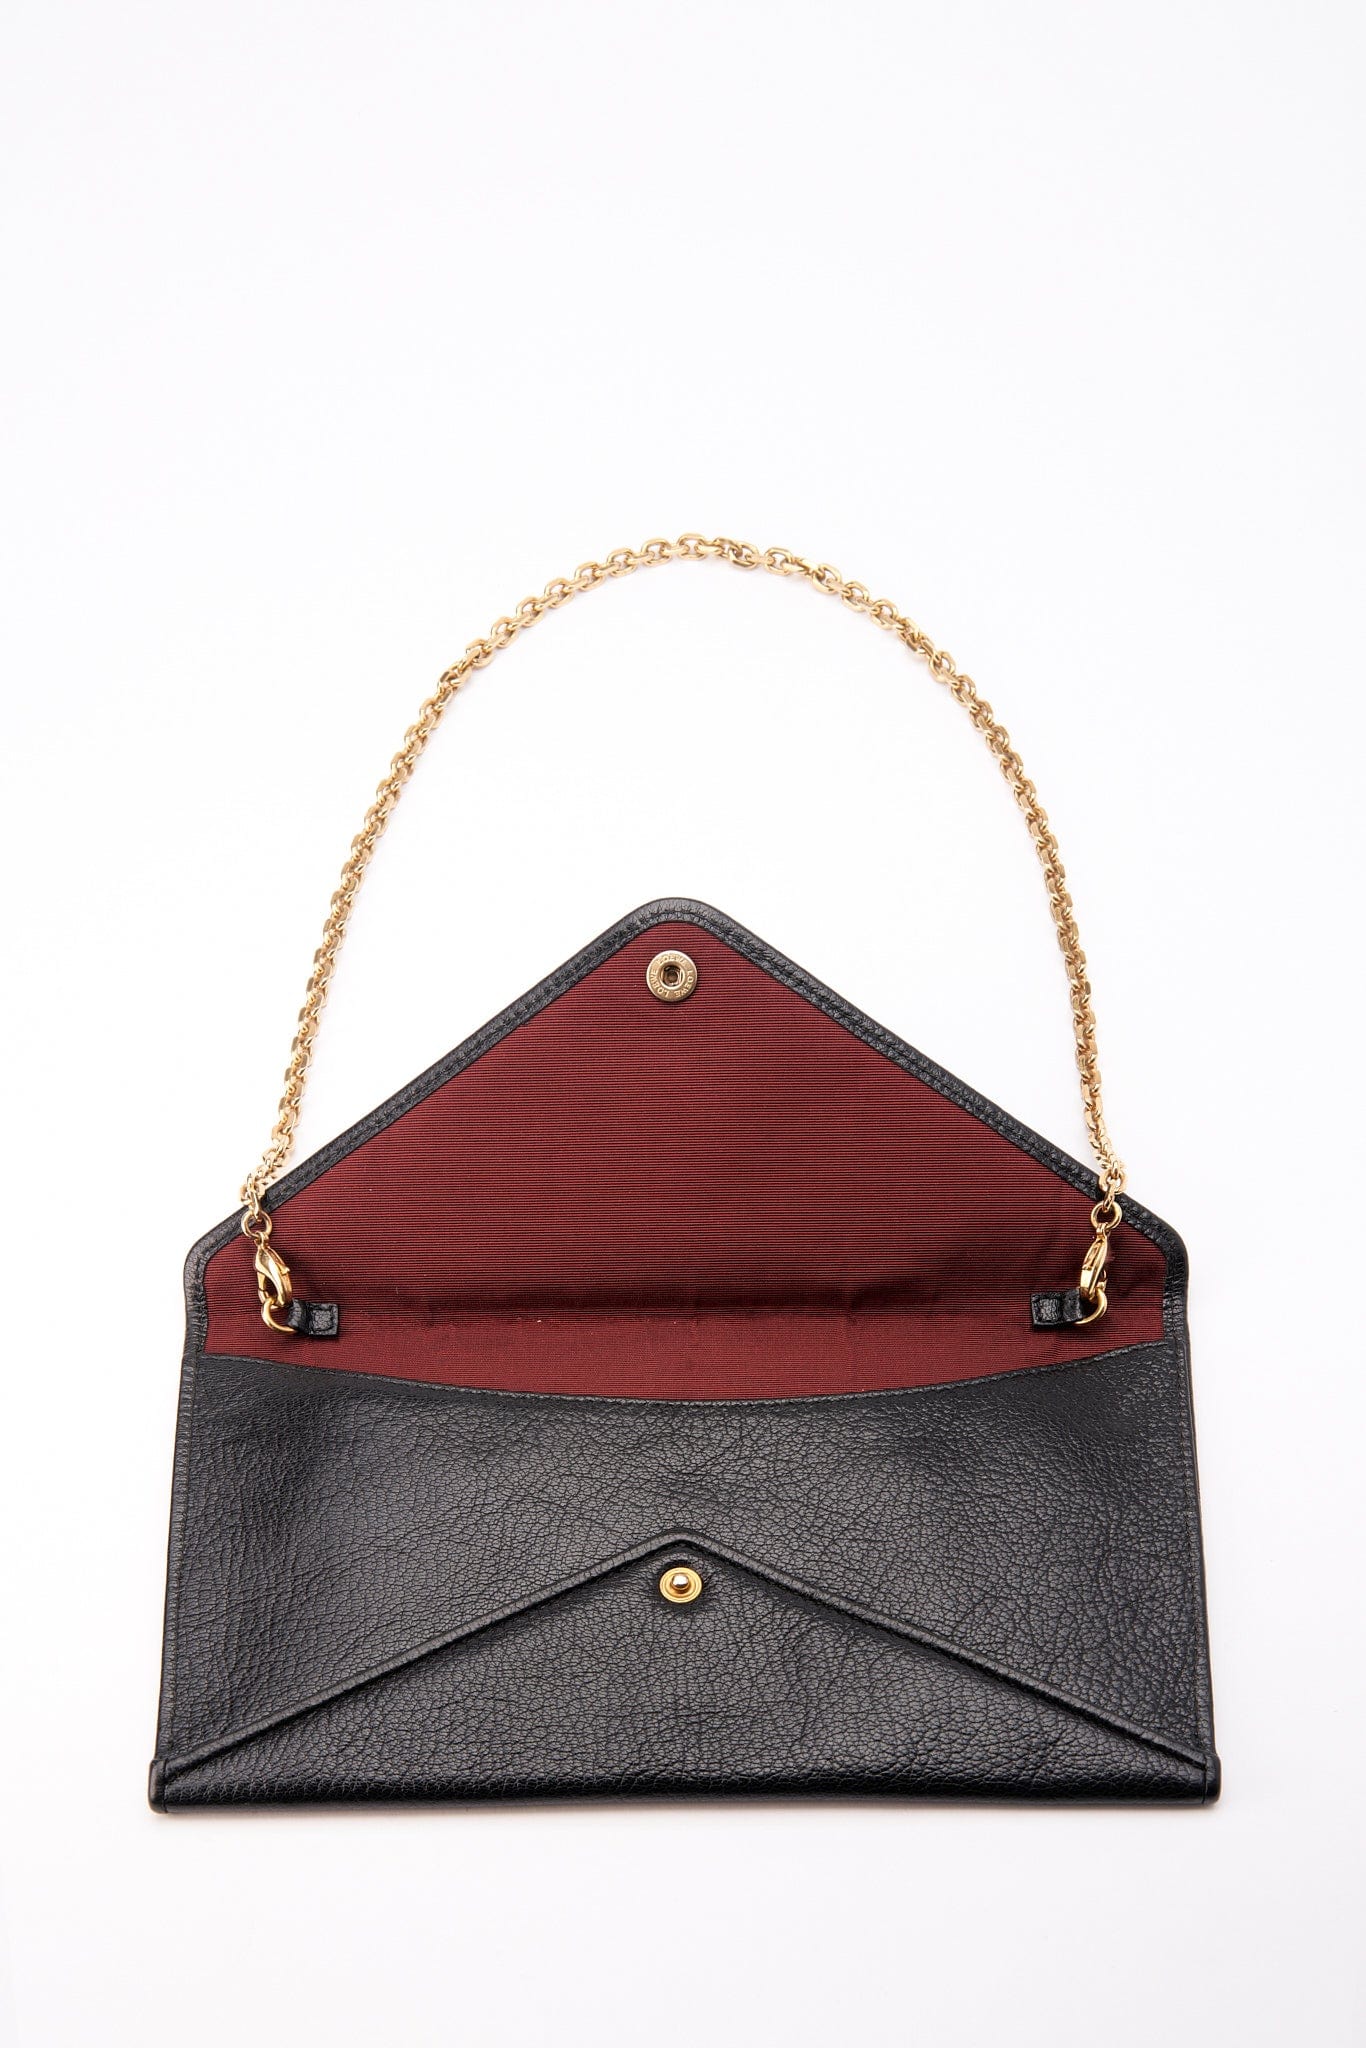 Vintage Loewe Leather Shoulder Bag